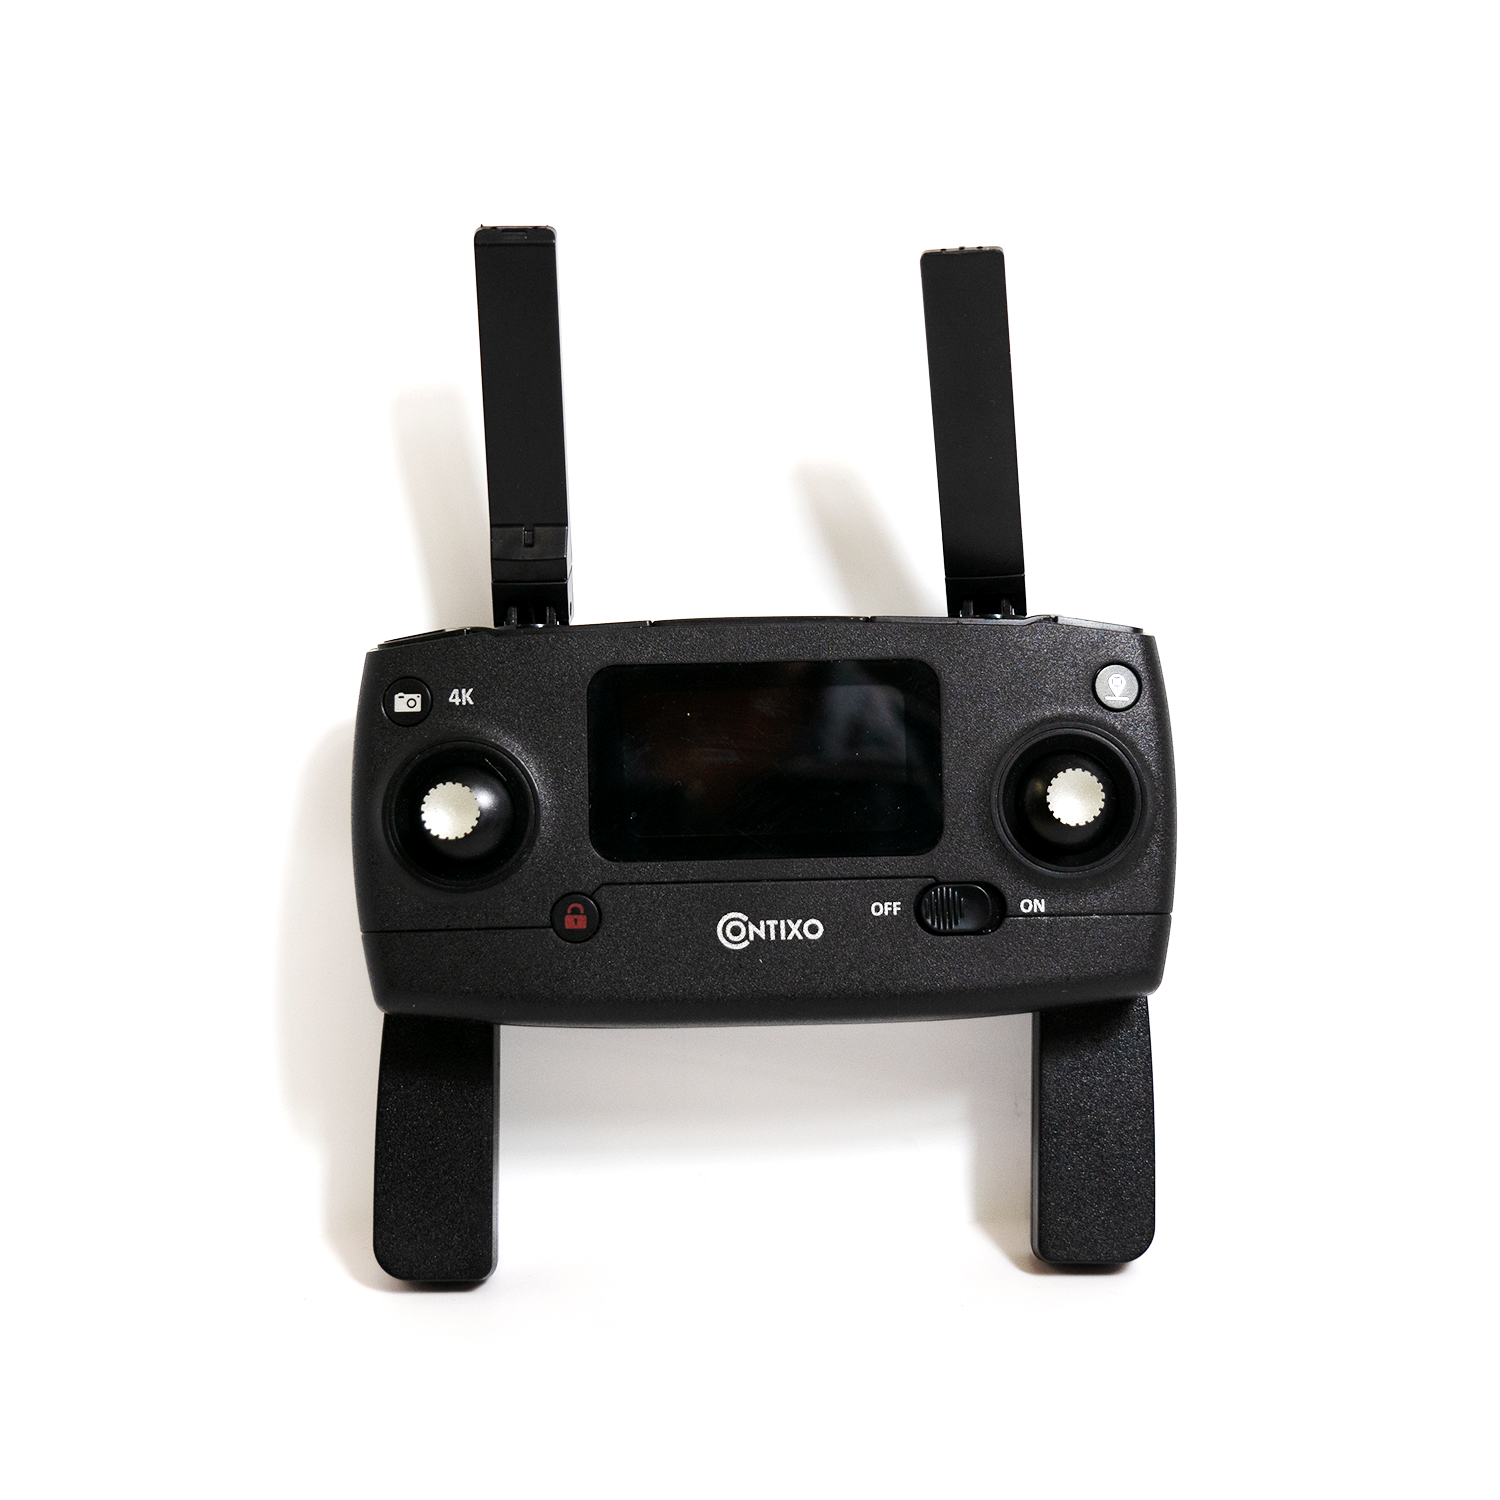 Contixo F31 Drone -Spare Remote Controller, High Range Drone Transmitter